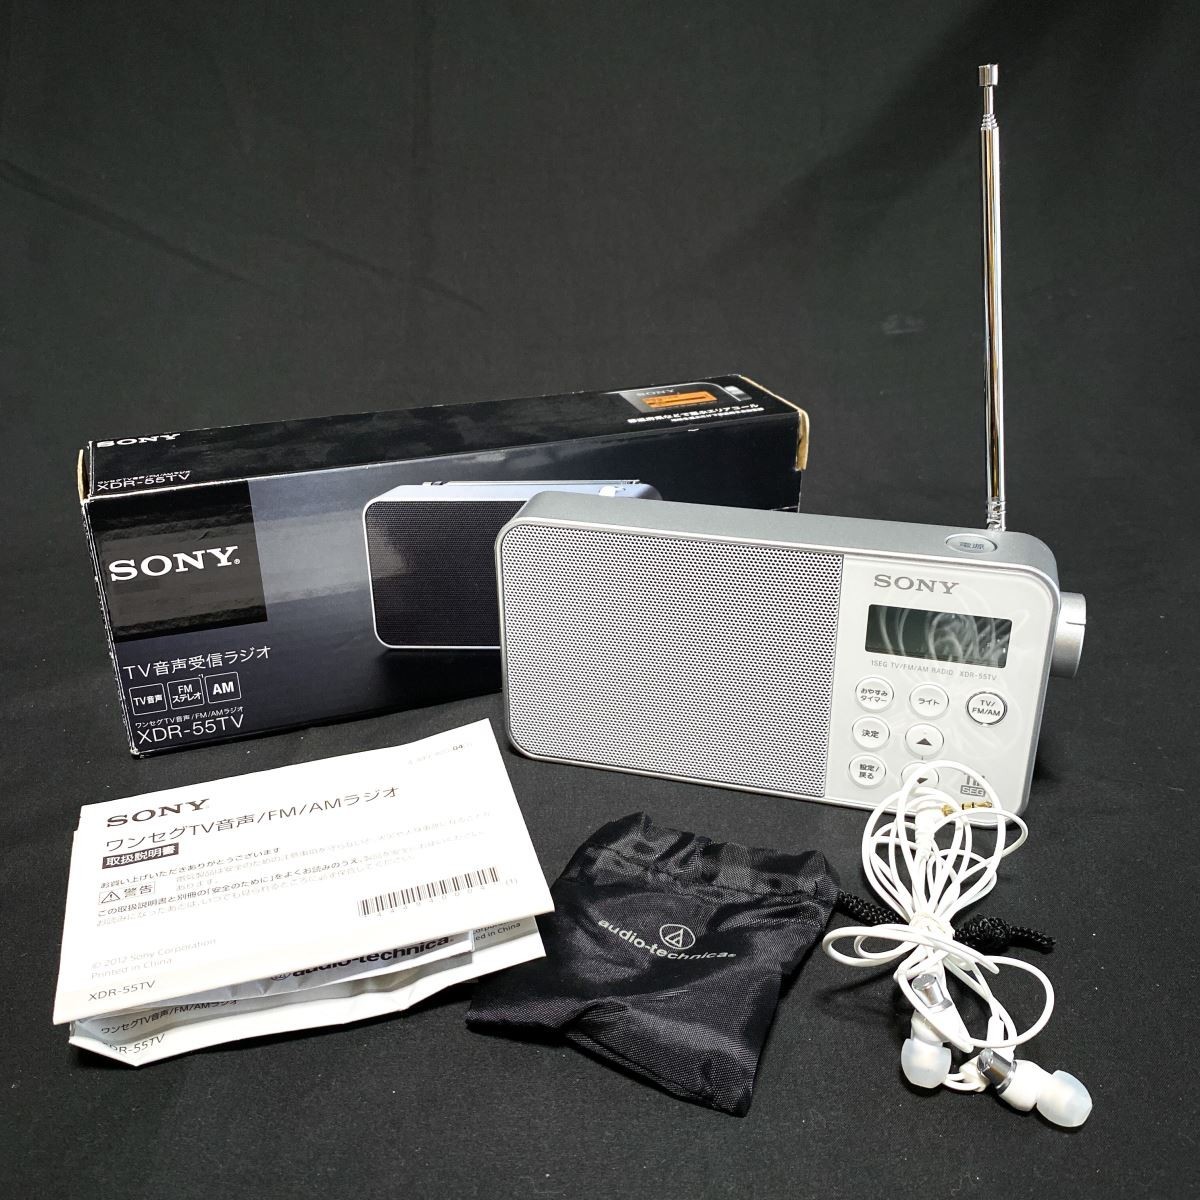 ソニー ラジオ XDR-55TV FM AM ワンセグTV音声対応 おやすみタイマー搭載 乾電池対応 ブラック XDR-55TV B - 3